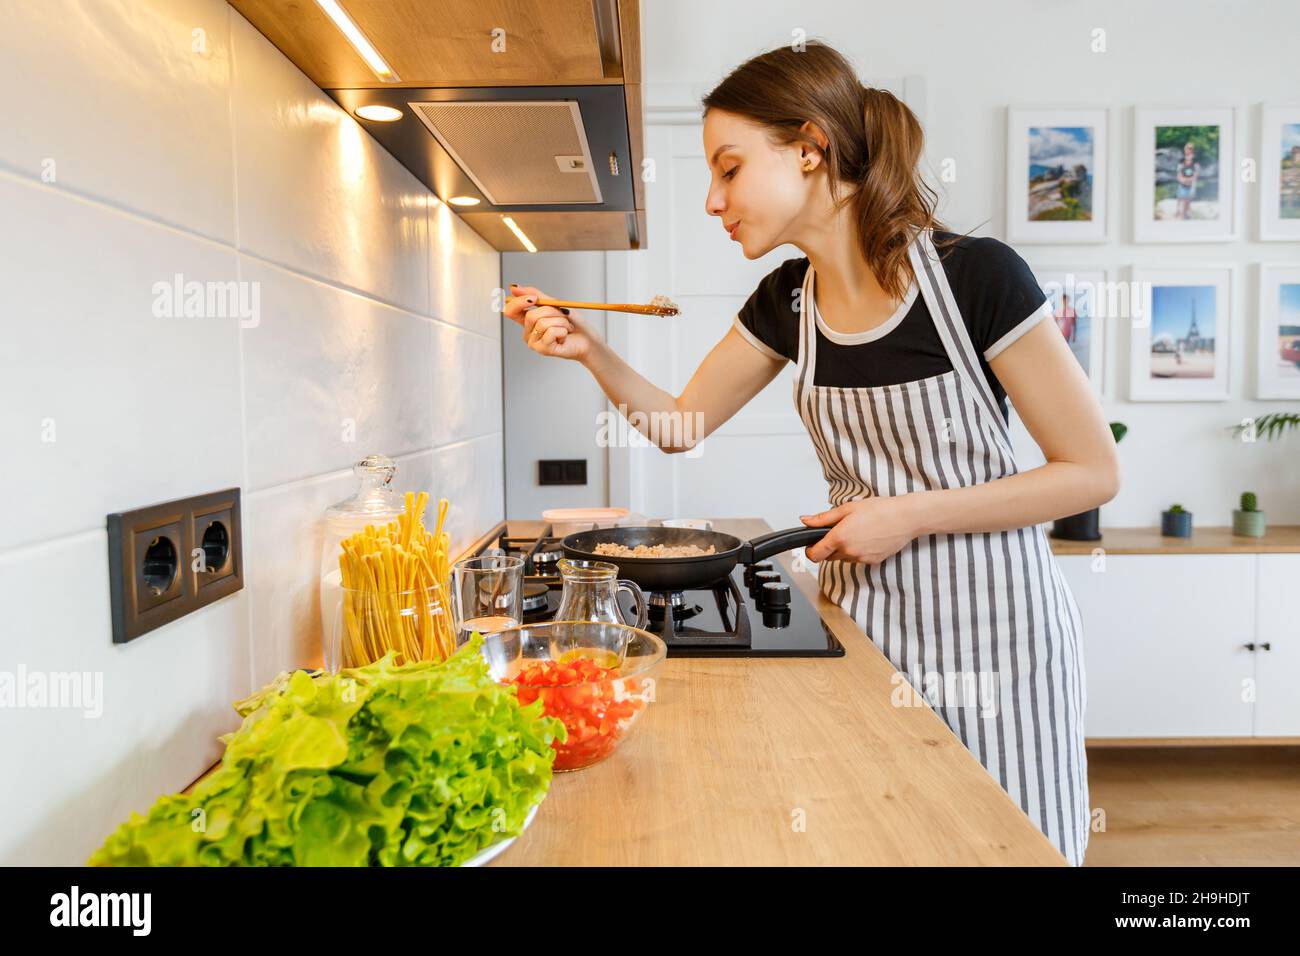 Jeune femme en tablier cuisant des aliments sains dans la cuisine moderne à la maison.Préparation du repas avec une poêle à frire sur une cuisinière à gaz.Concept de style de vie domestique, Happy ho Banque D'Images